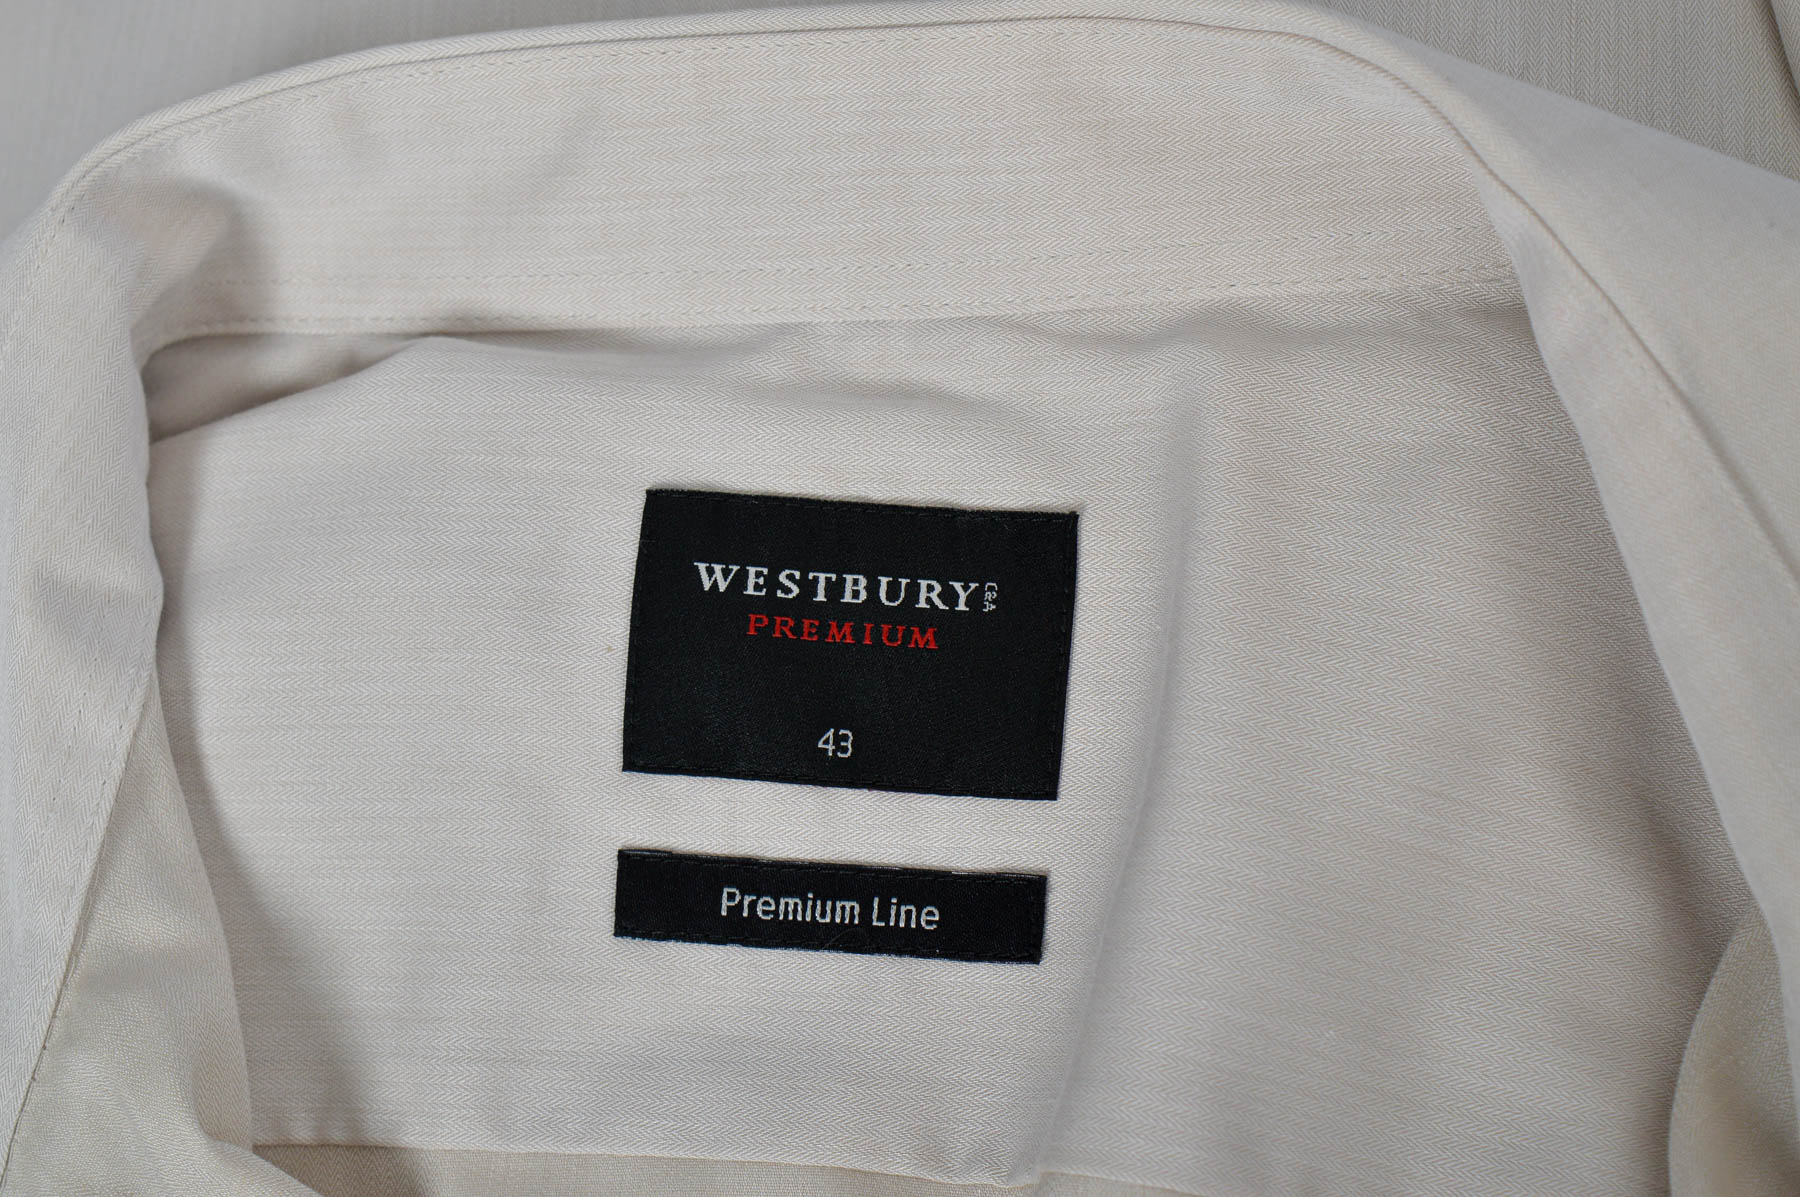 Ανδρικό πουκάμισο - WESTBURY - 2